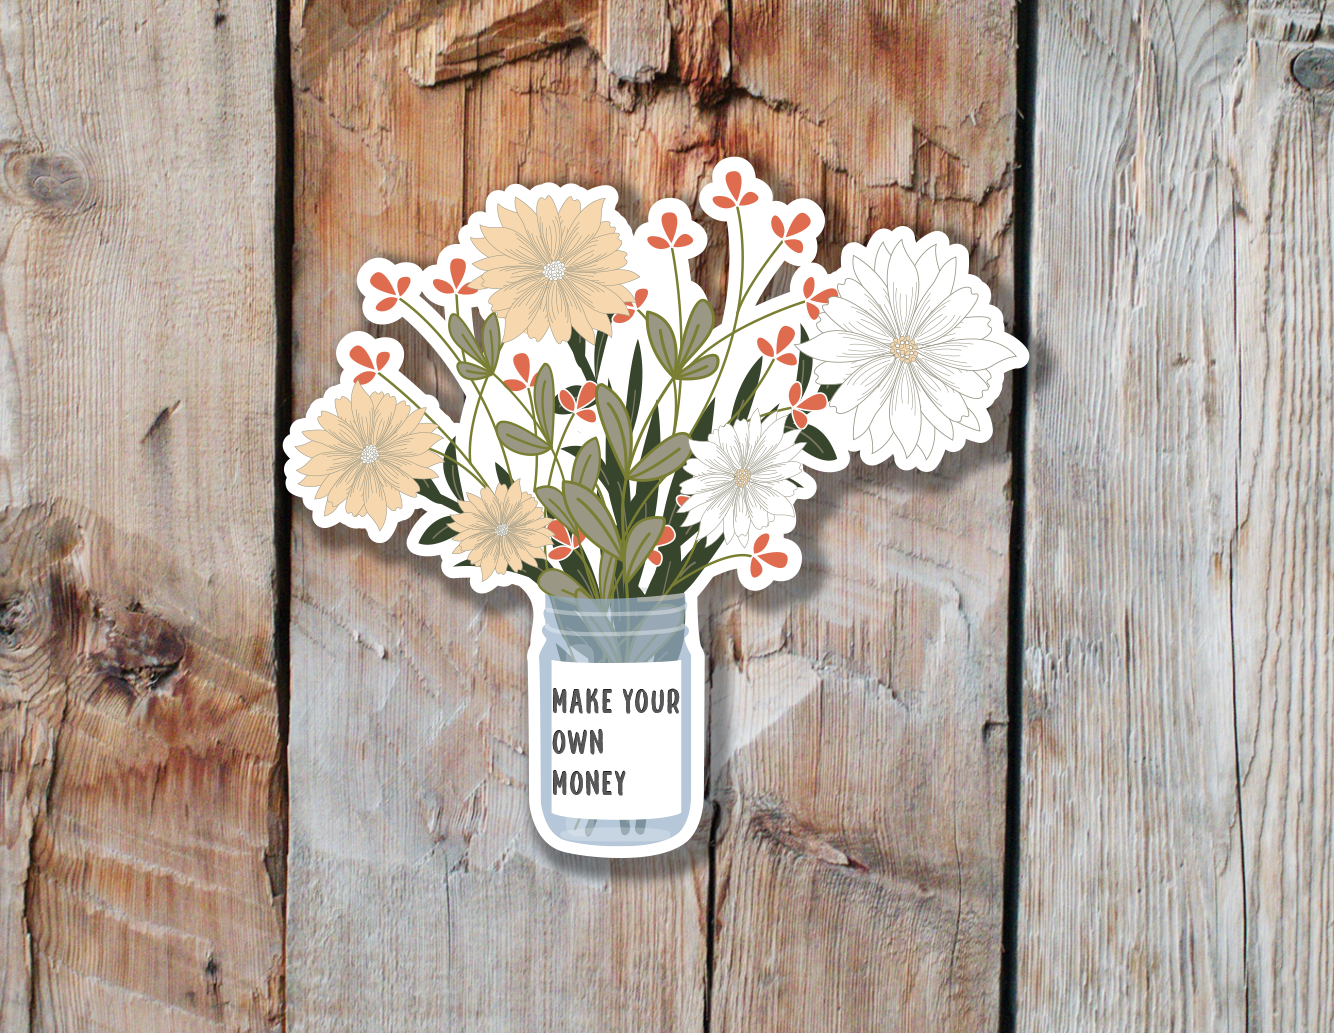 Wild Flower Bouquet Sticker | Make Your Own Money Sticker | Feminist Stickers | Independent Women Stickers | Trendy Floral Stickers|